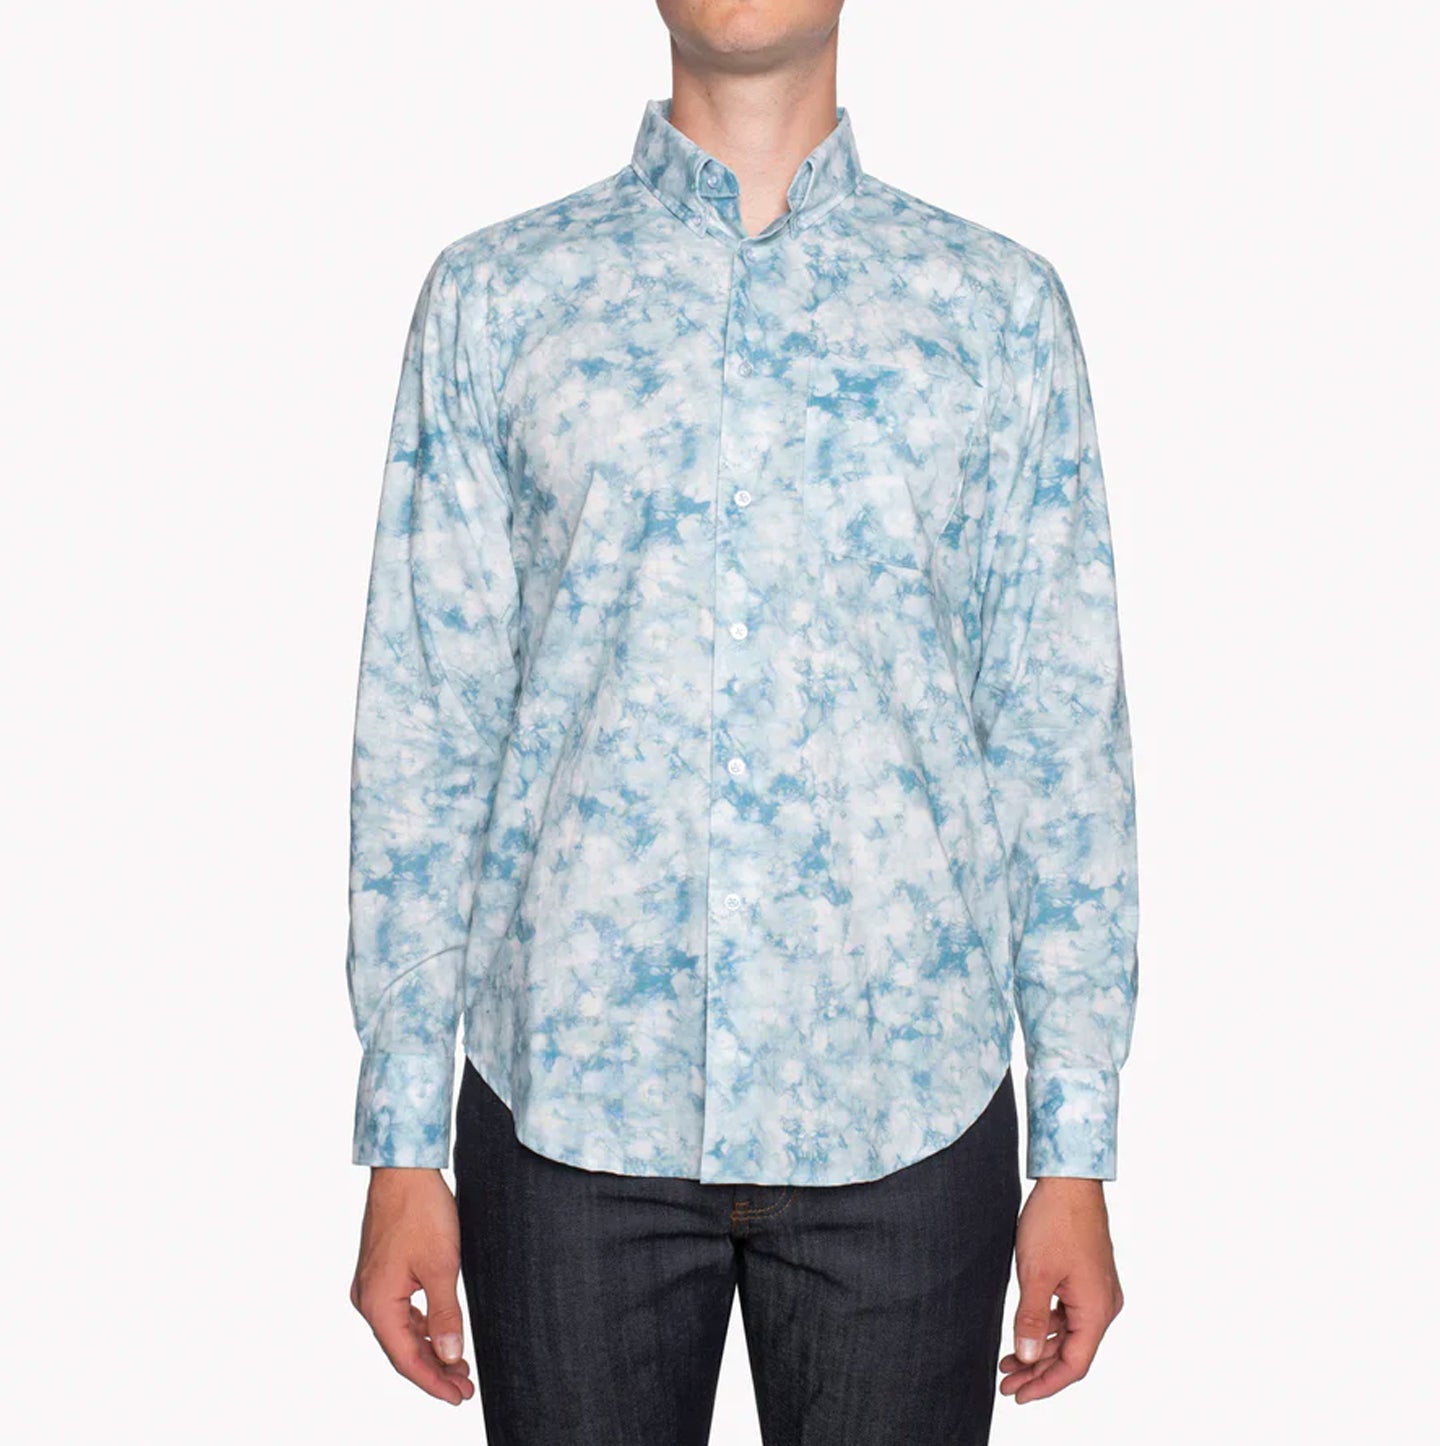 Easy Shirt - Tie Dye Print - Pale Blue